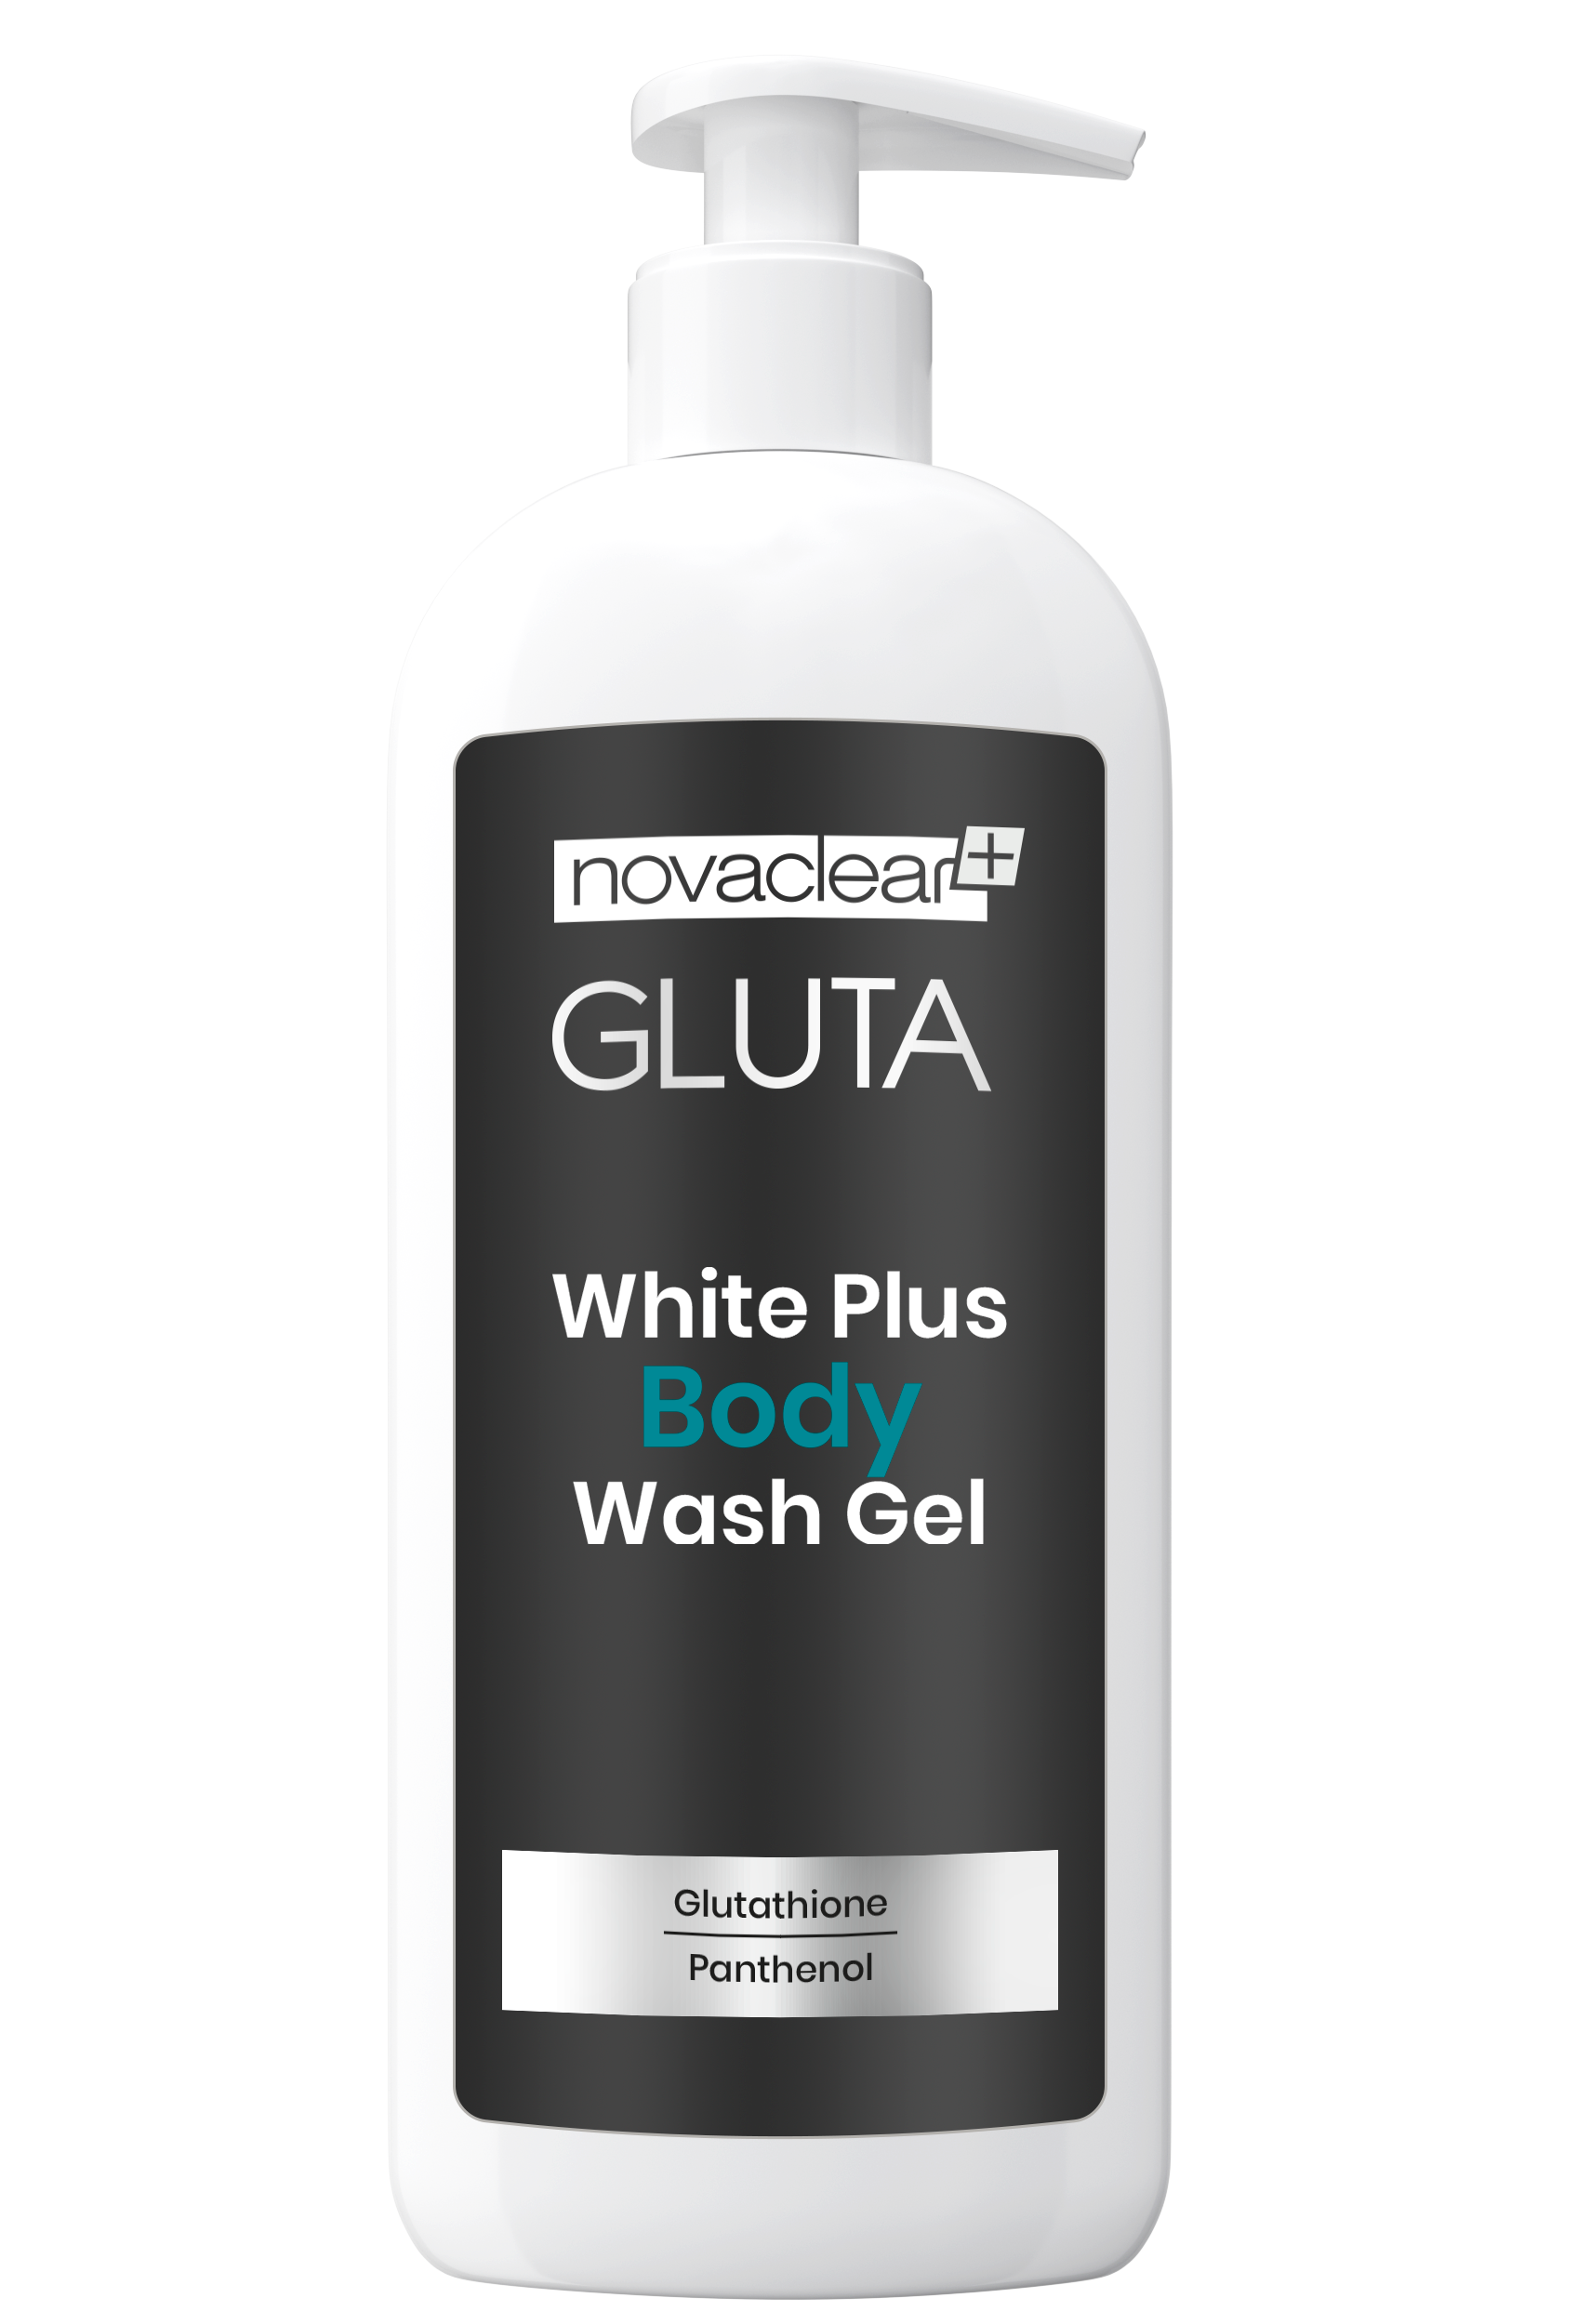 Novaclear Gluta Body Wash Gel